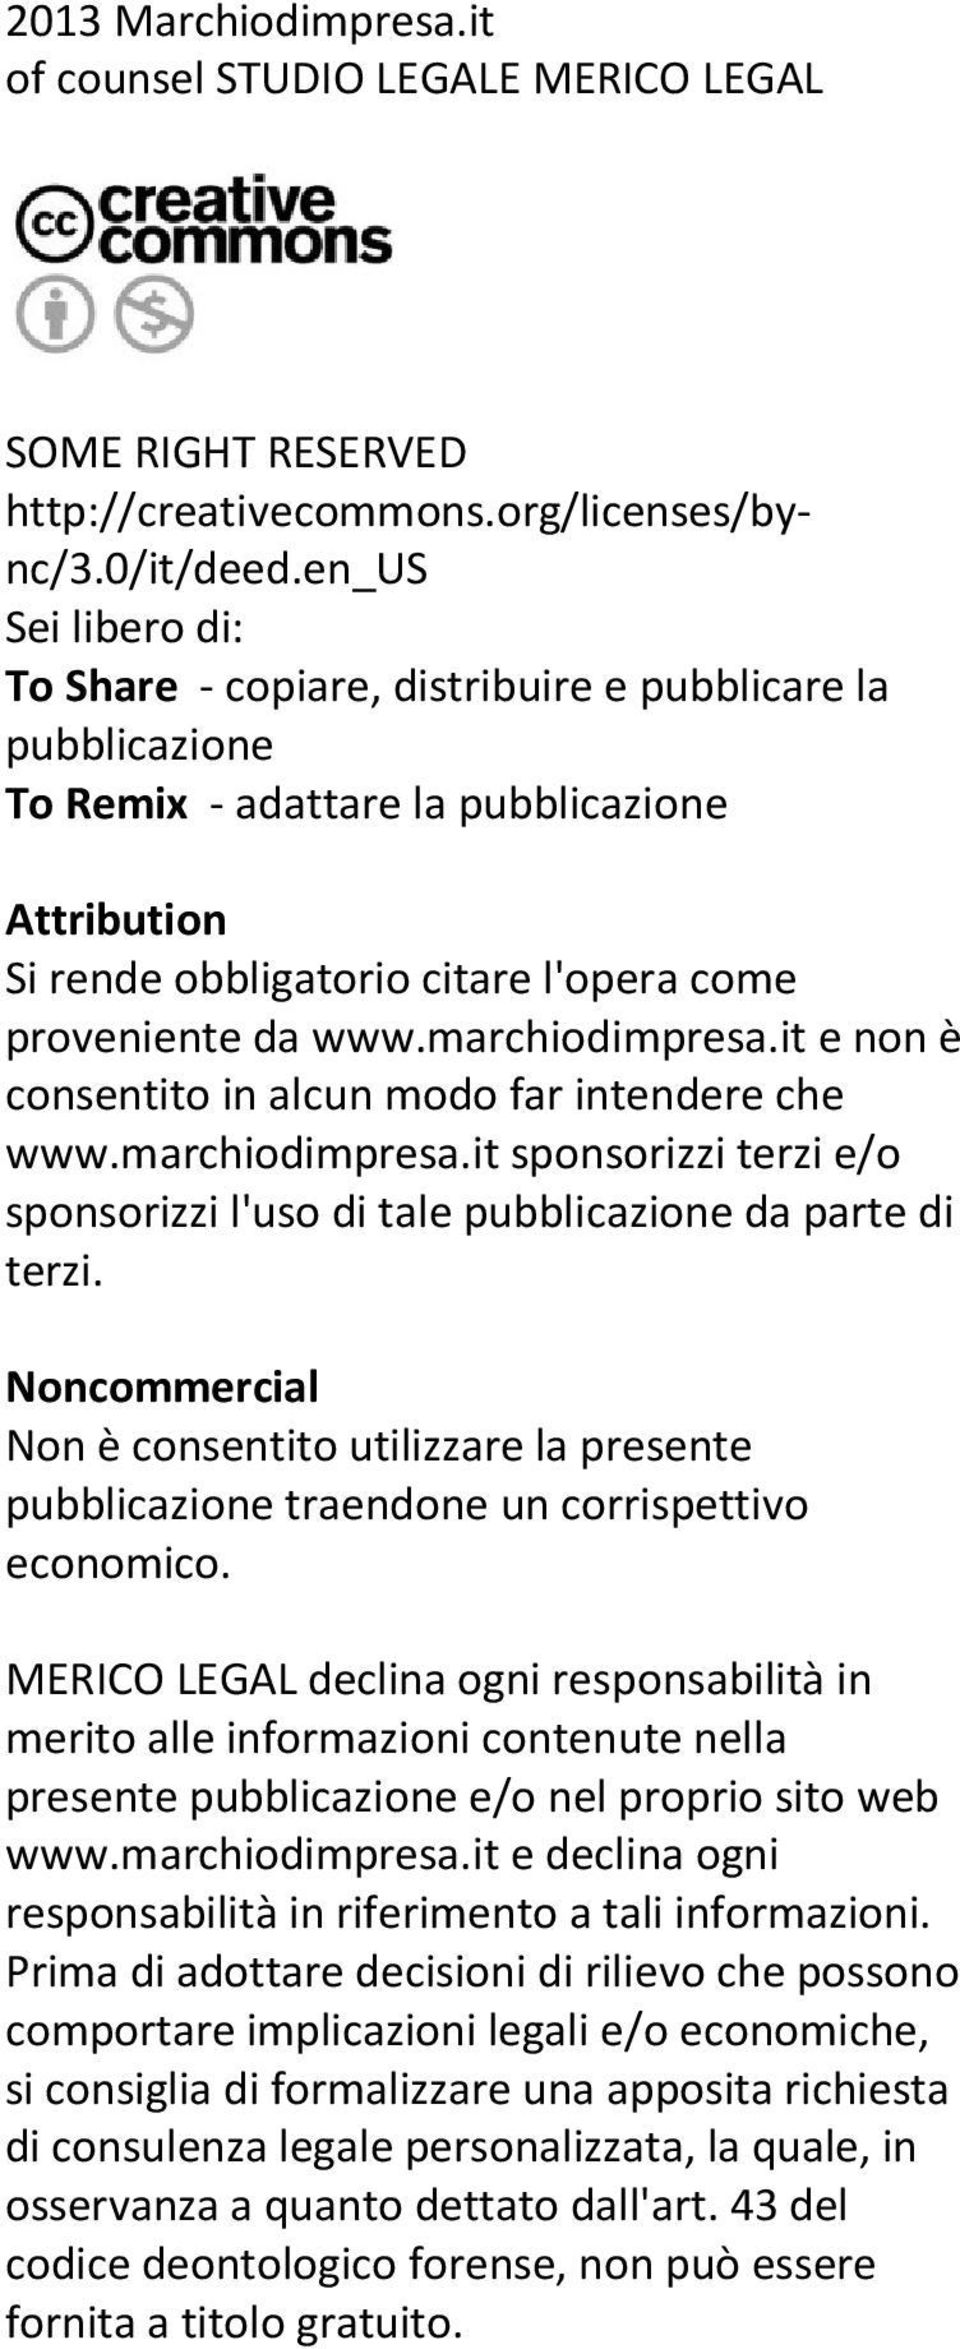 marchiodimpresa.it e non è consentito in alcun modo far intendere che www.marchiodimpresa.it sponsorizzi terzi e/o sponsorizzi l'uso di tale pubblicazione da parte di terzi.